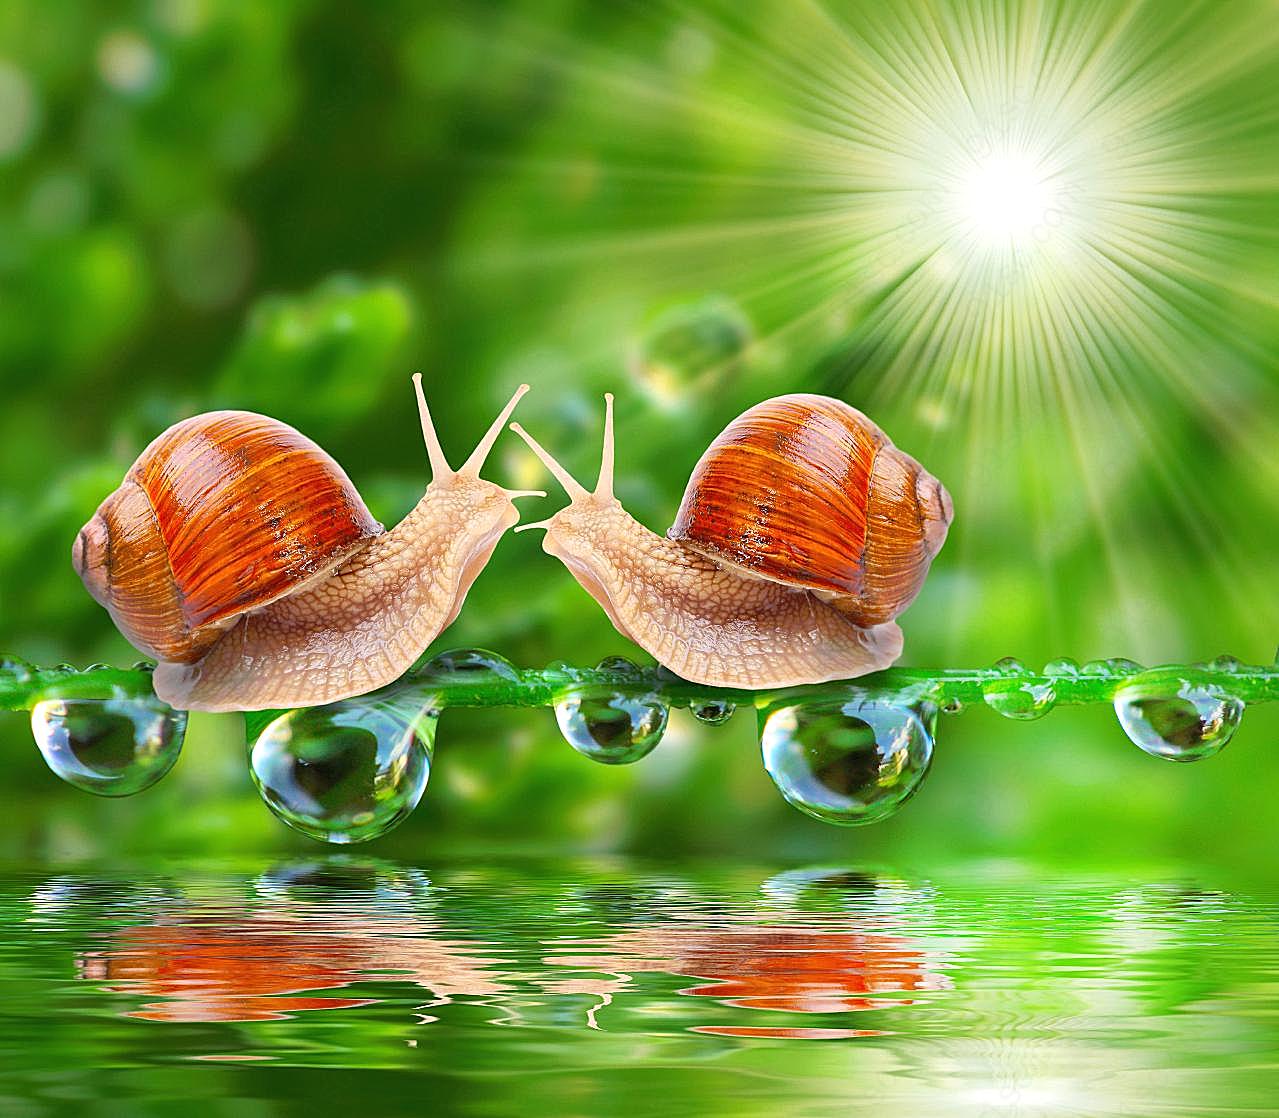 可爱小蜗牛图片下载高清生物